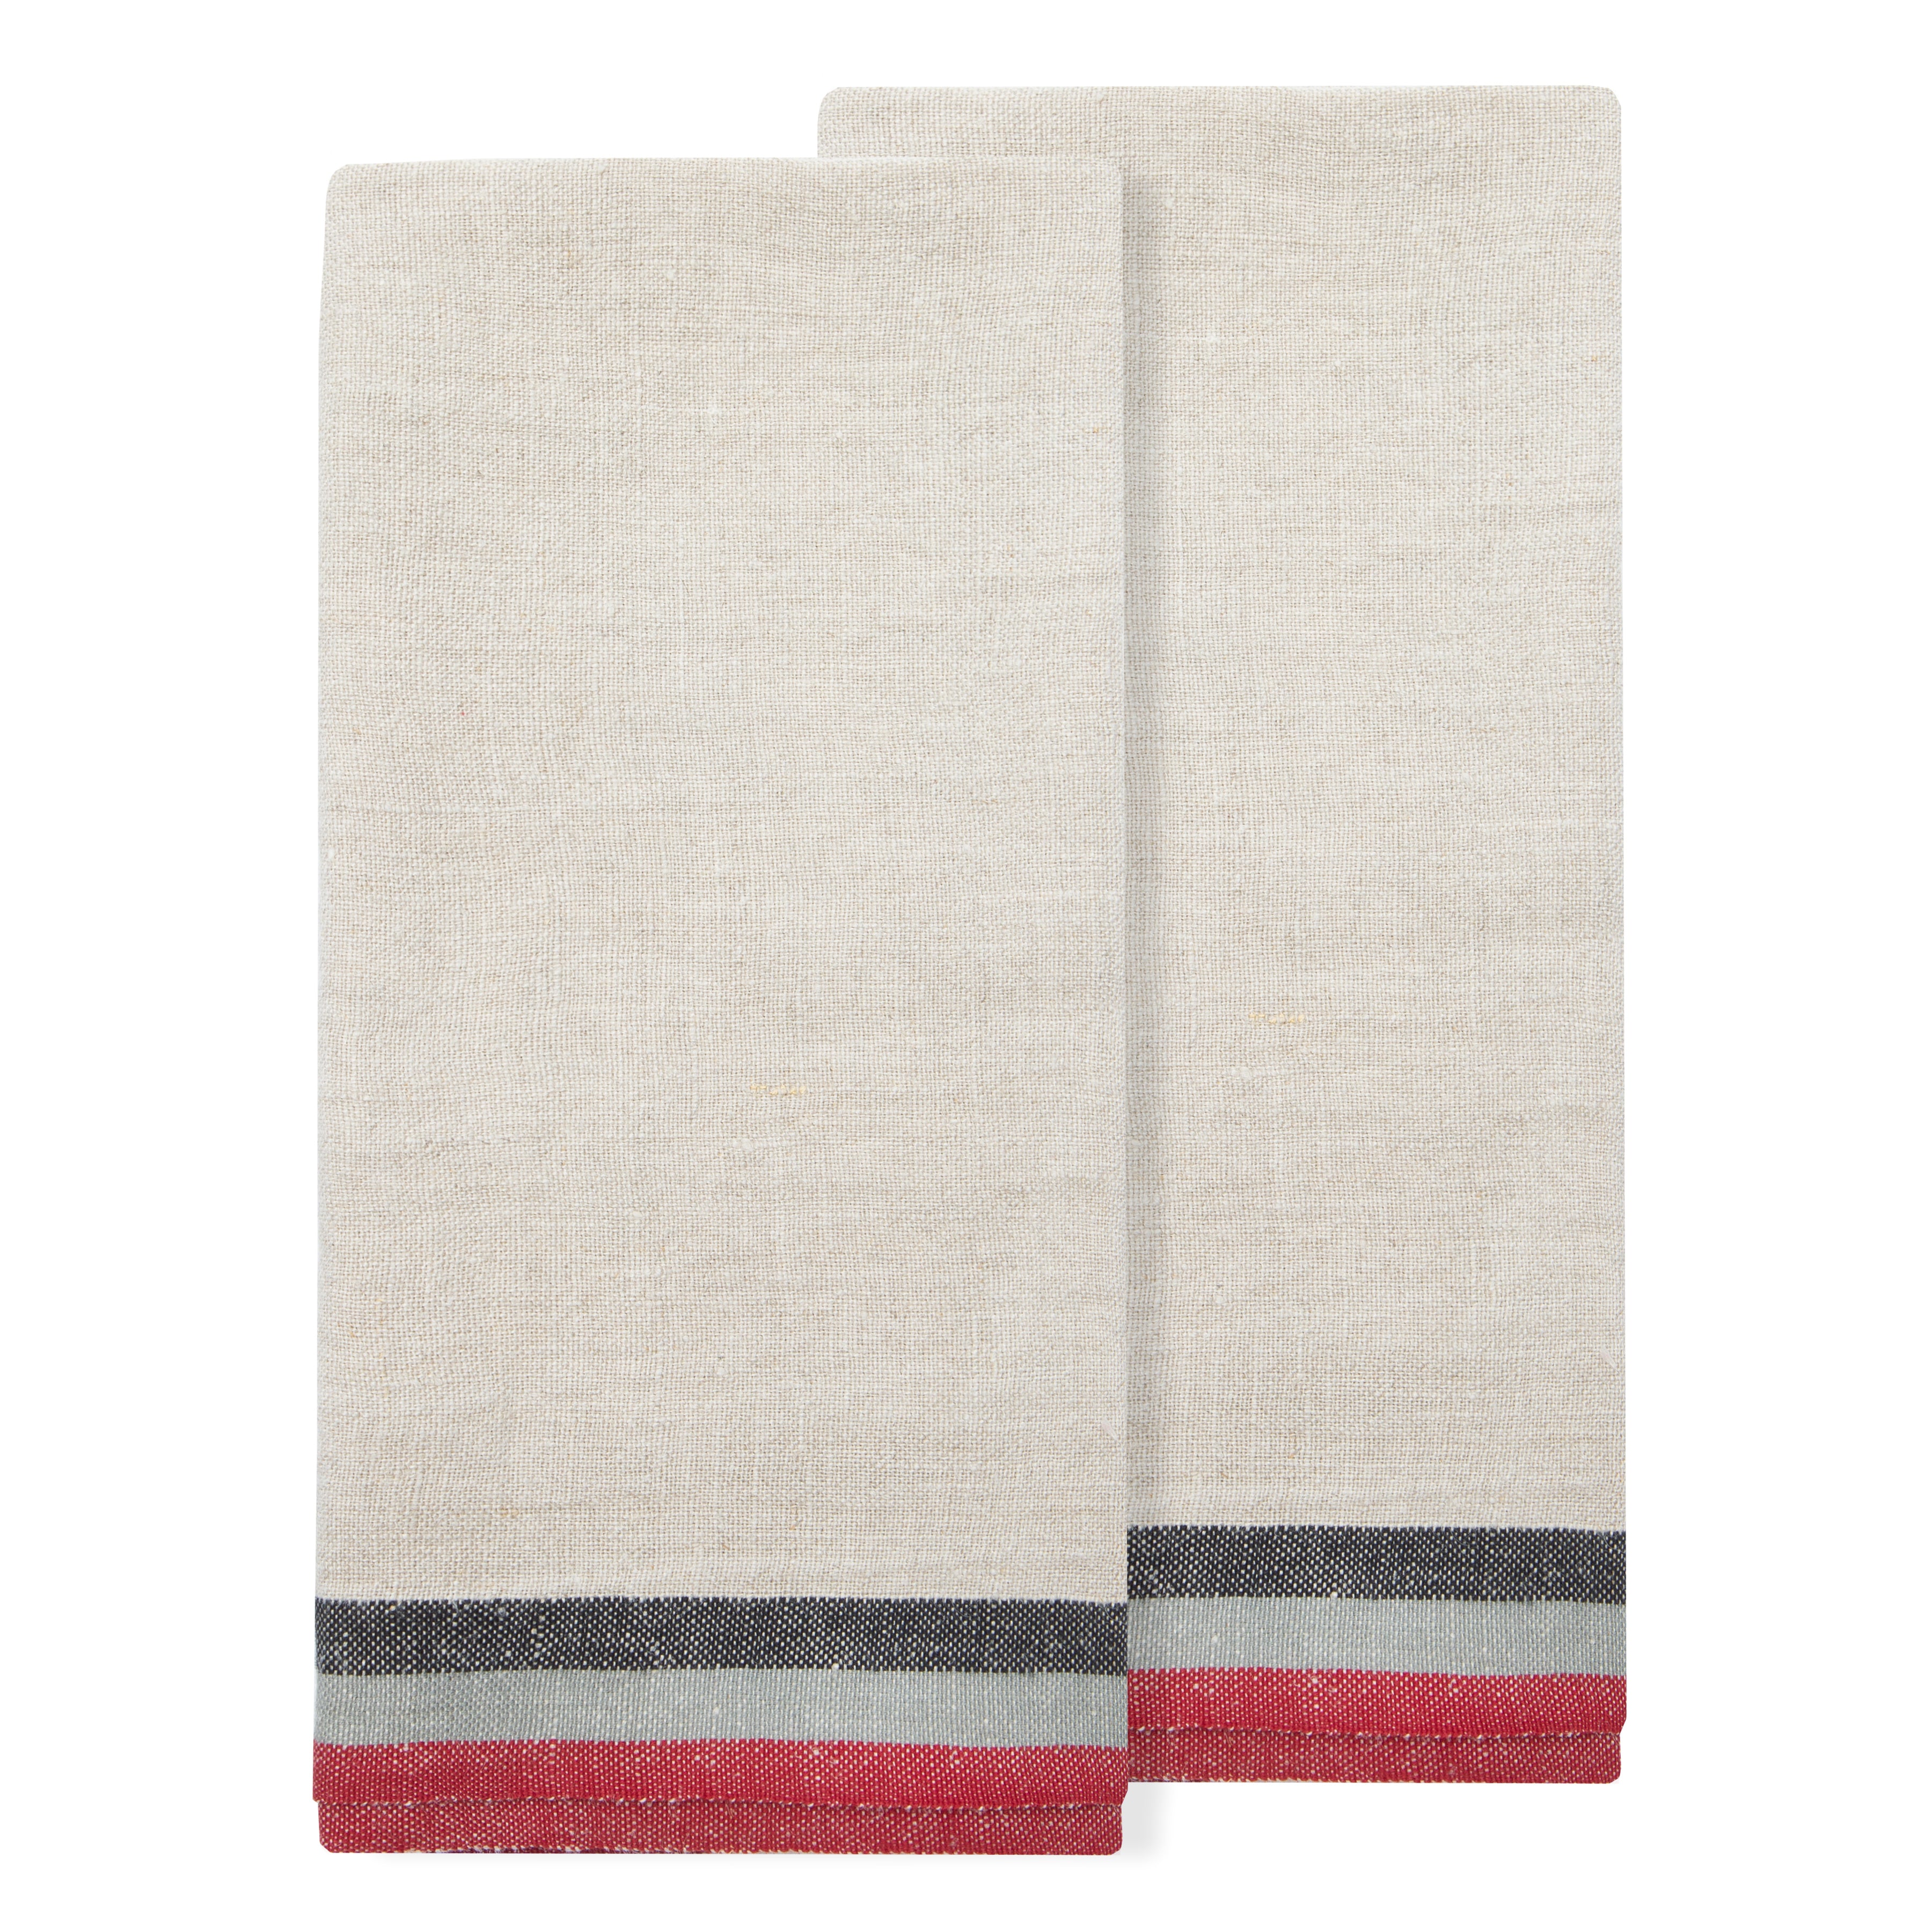 Normandy Natural - Tea Towels 20x30 - Set of 2